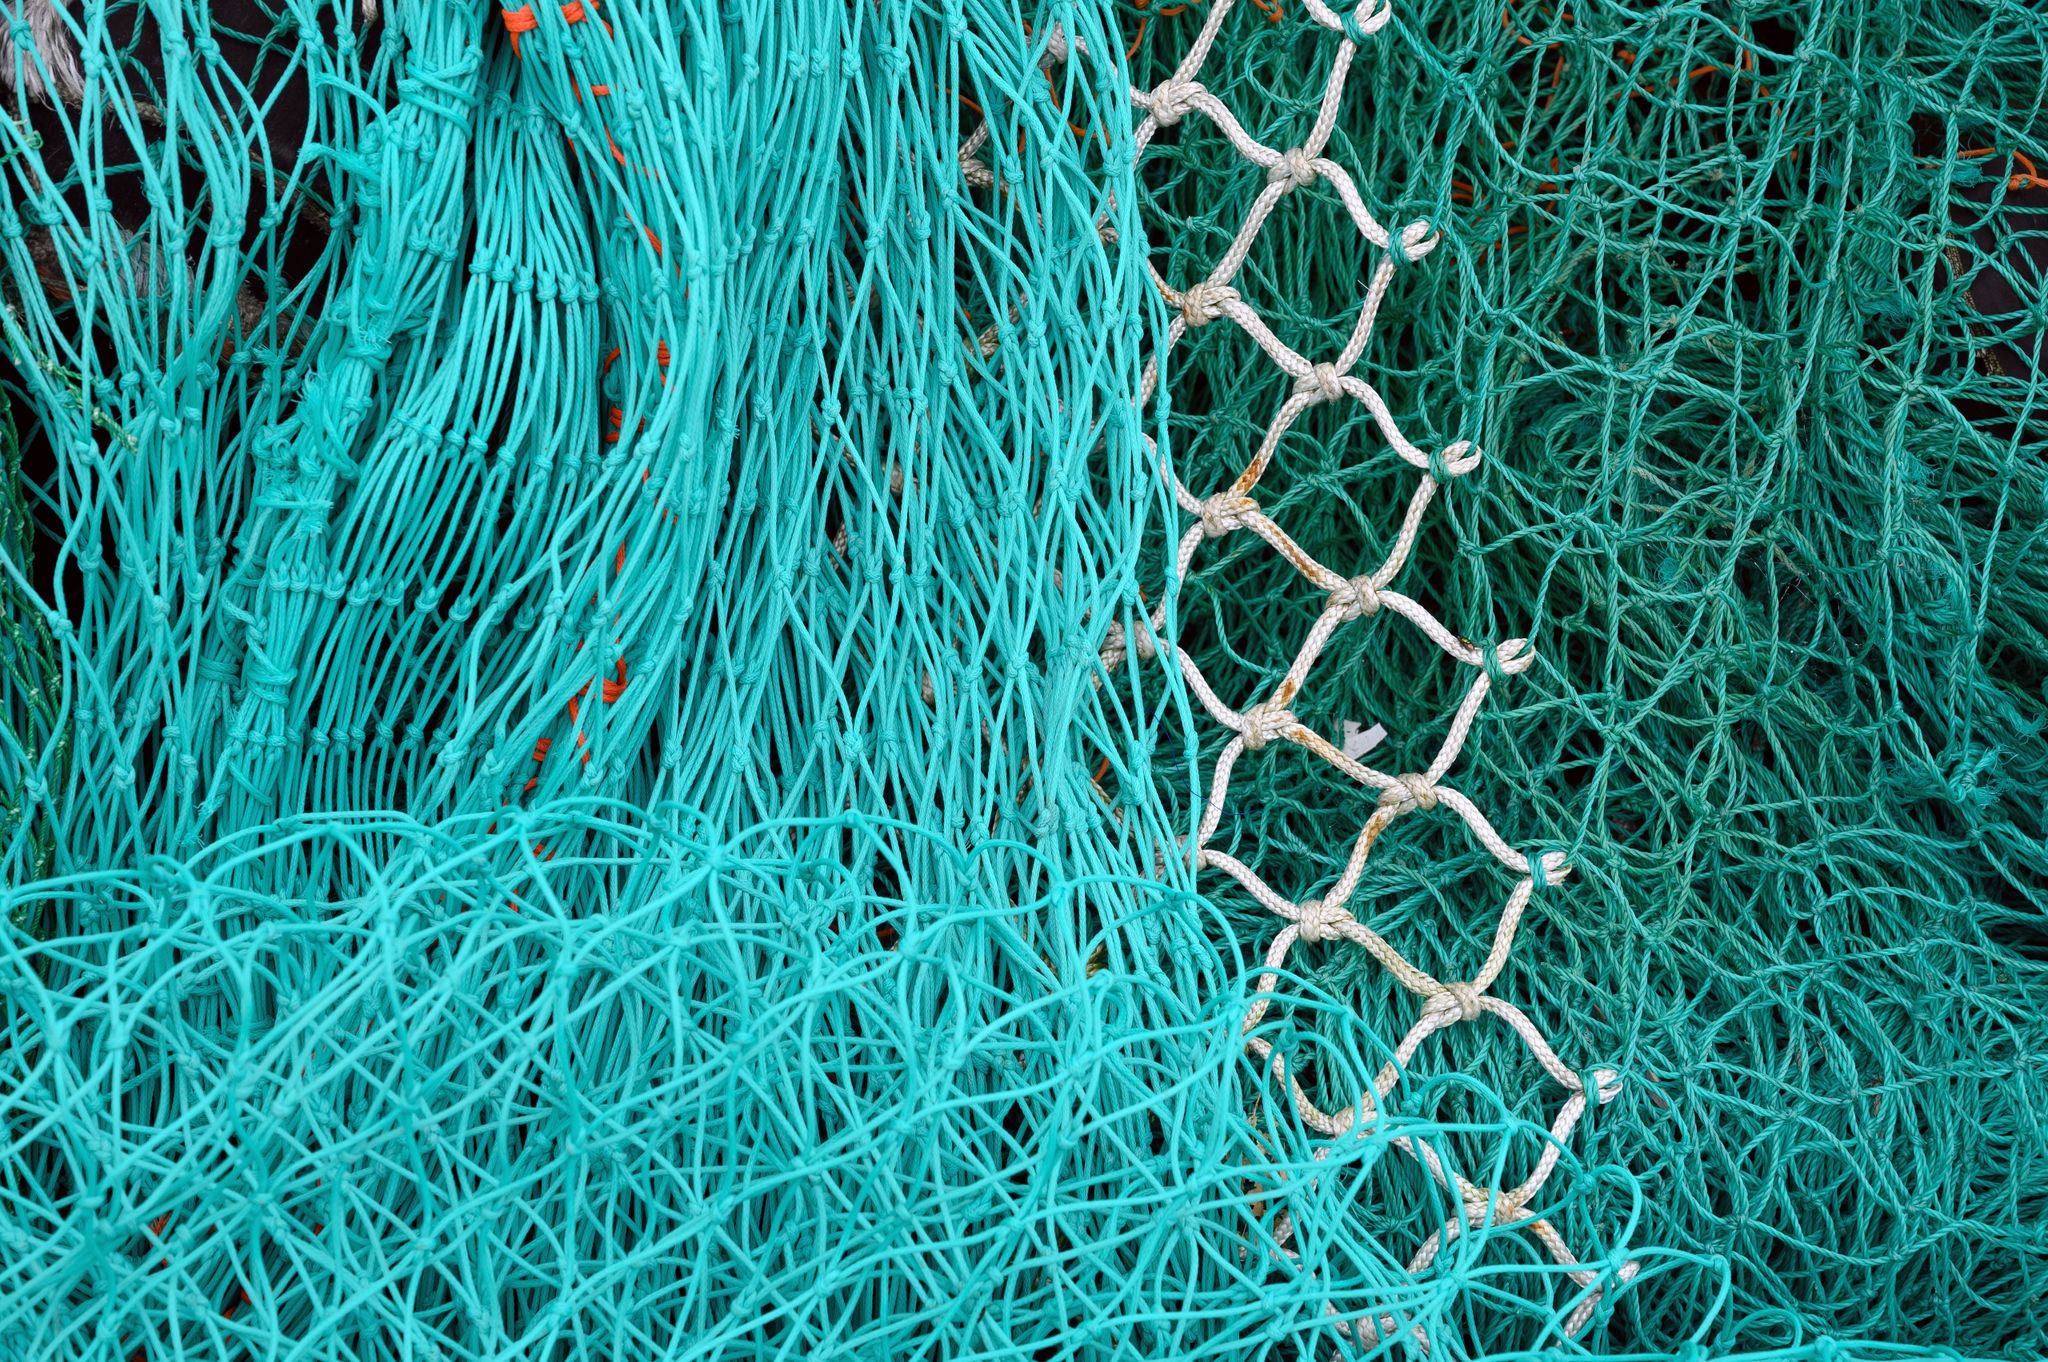 Grundschleppnetze stehen in der Kritik, weil der Meeresboden durch das Fanggerät erheblich beschädigt werden kann (Symbolbild).